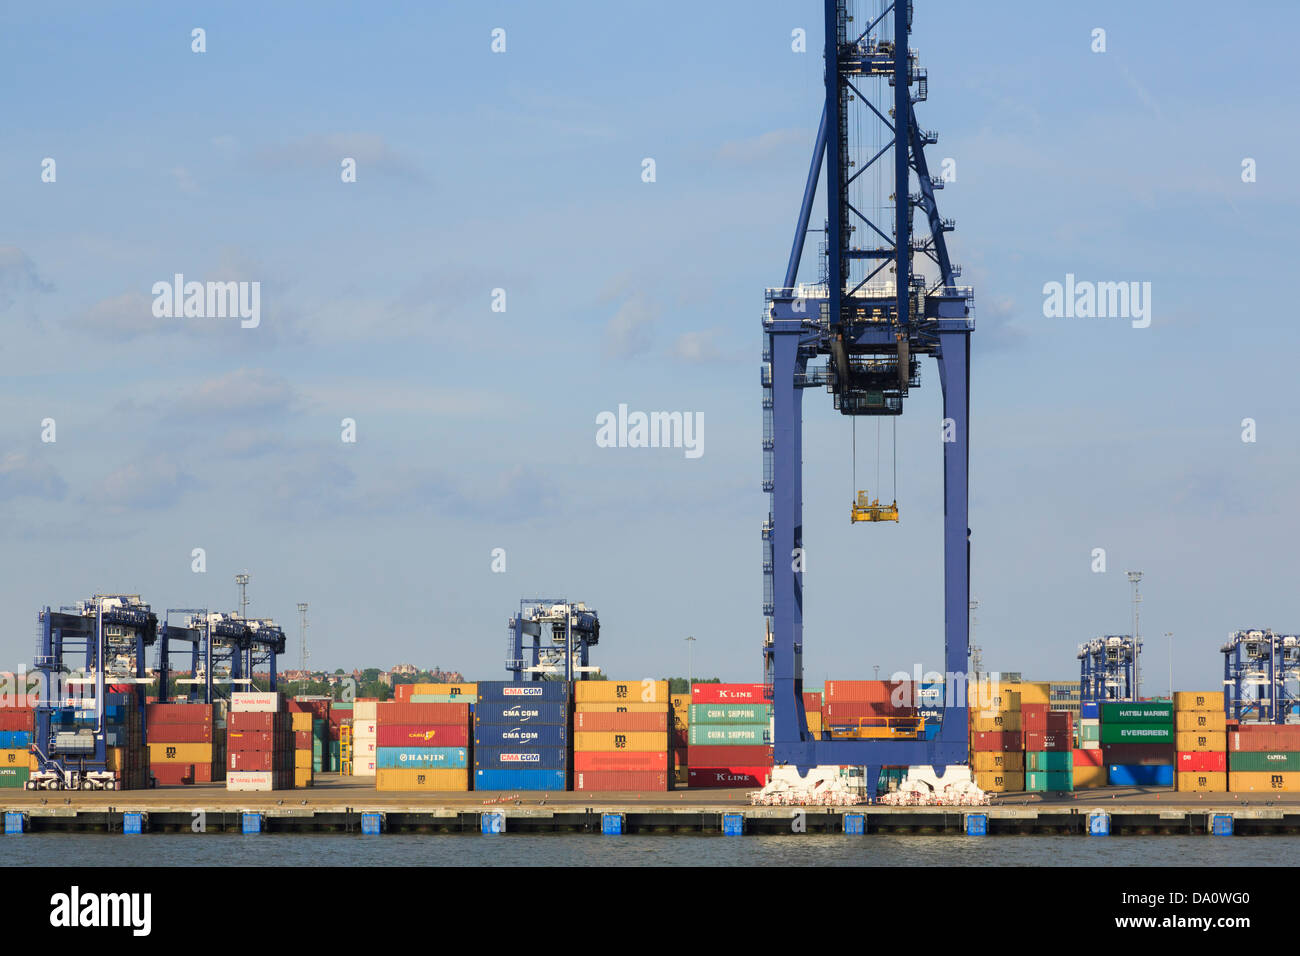 Portiques de levage des conteneurs sur un terminal portuaire quai de plus grand port à conteneurs britannique UK. Port de Felixstowe Suffolk Angleterre Grande-bretagne Banque D'Images